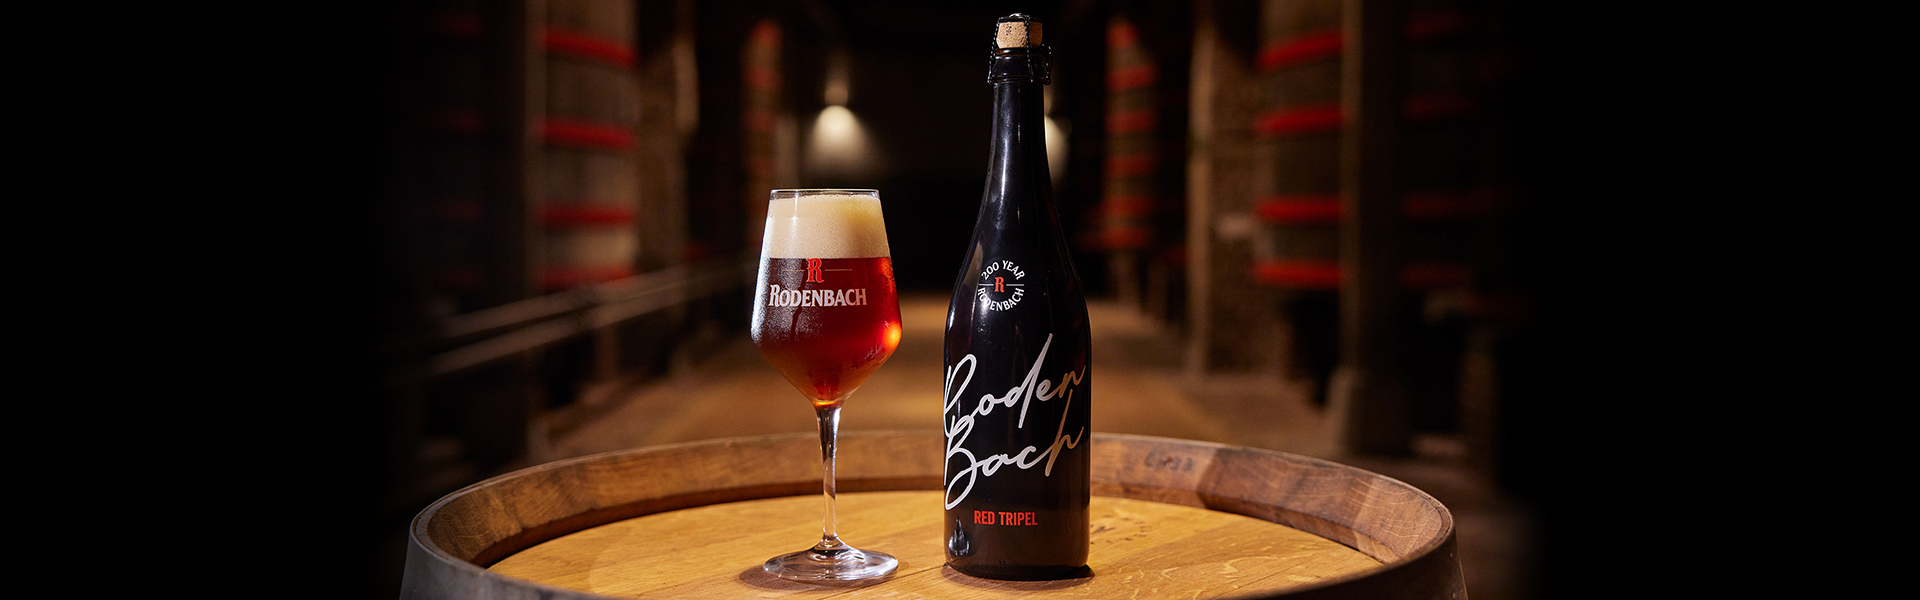 Legendariska bryggeriet Rodenbach firar 200 år och släpper unik suröl